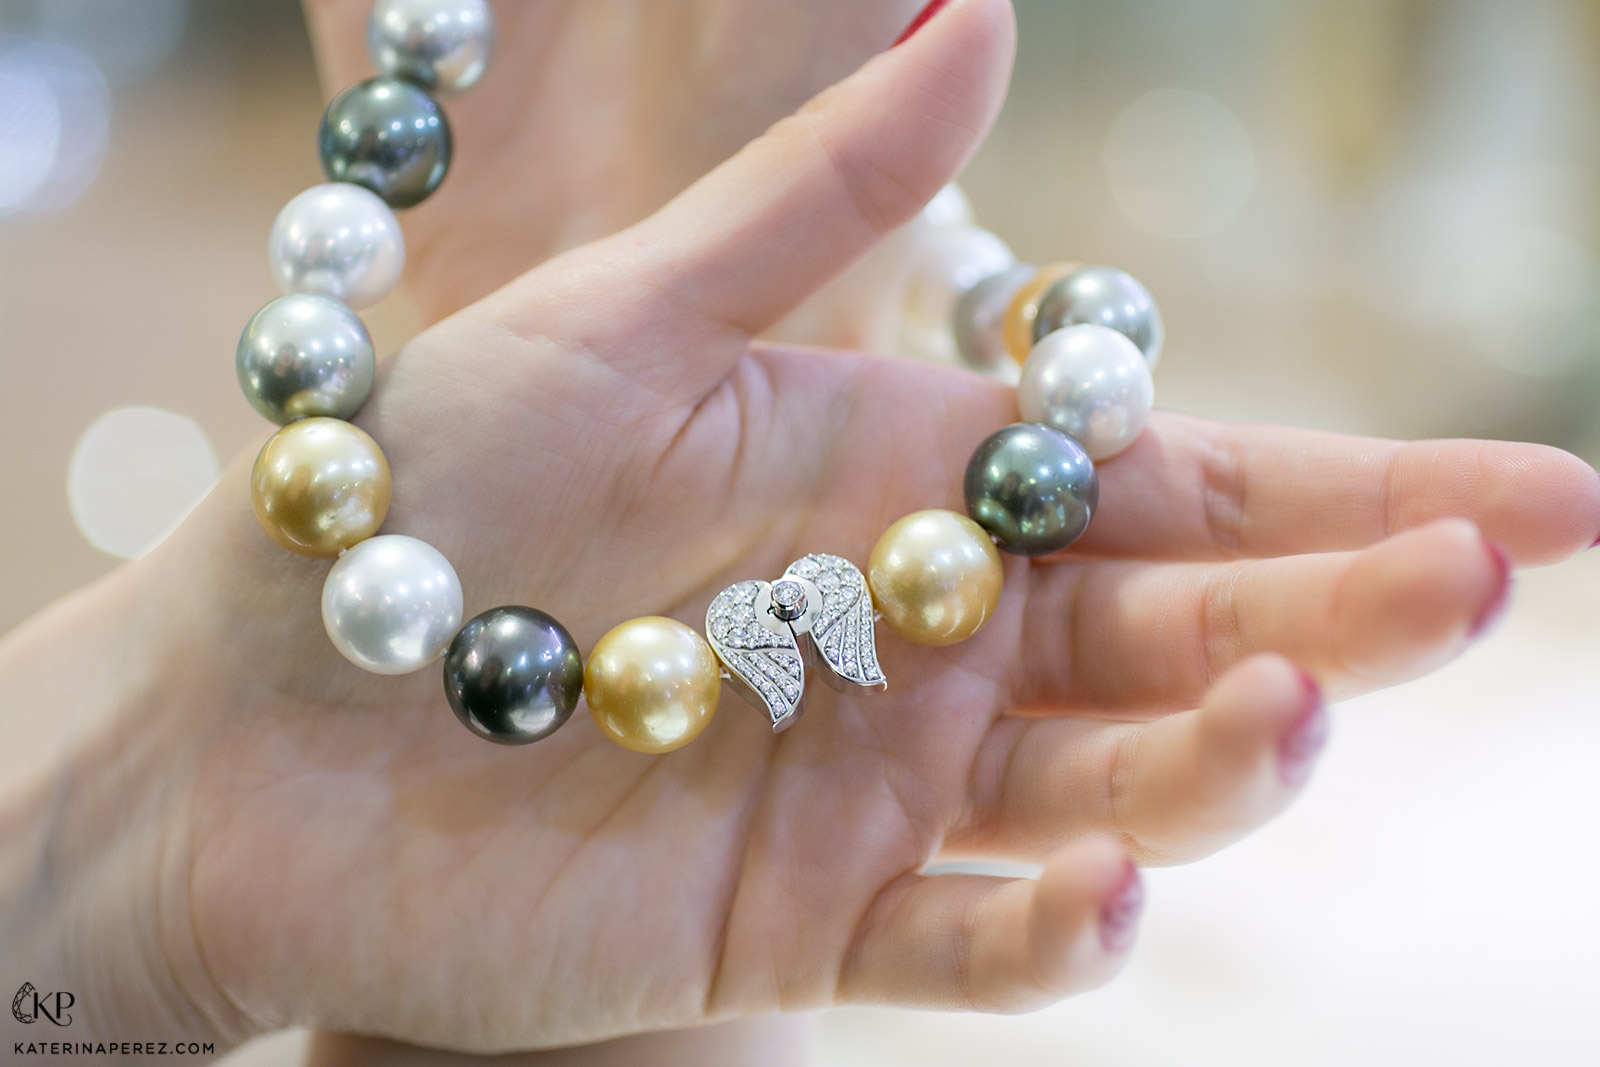 Ожерелье Ksenia Podnebesnaya с жемчугом Южных морей, Таитянским жемчугом и бриллиантовой застежкой